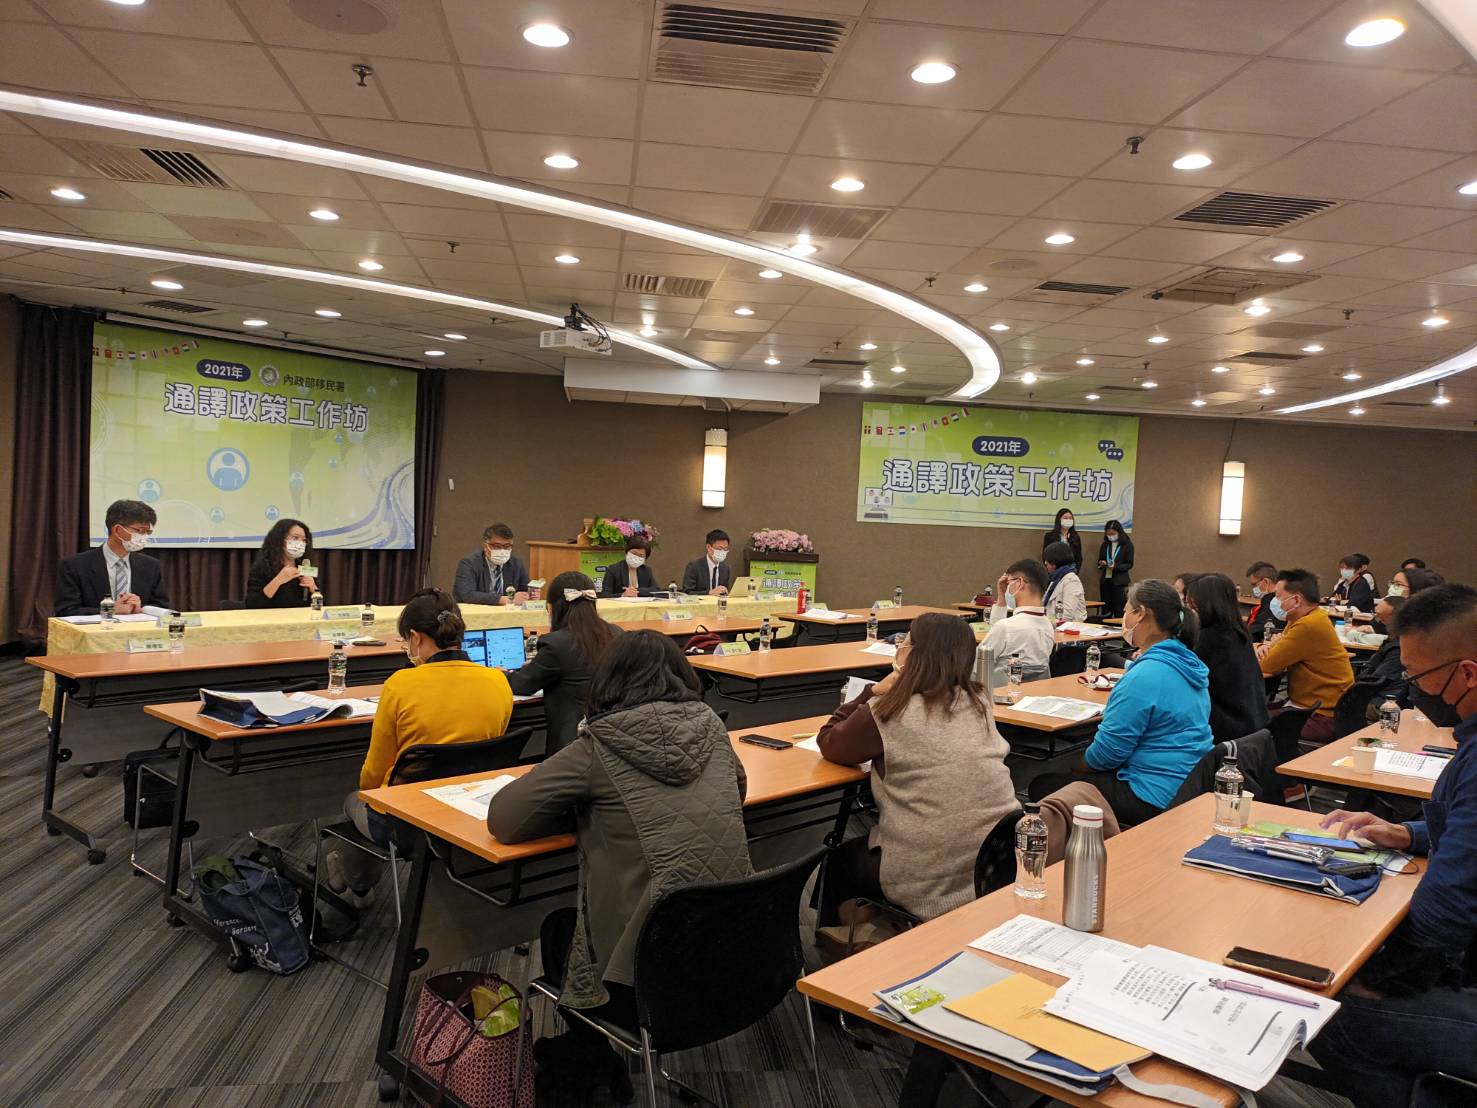 Workshop tersebut dihadiri oleh 70 akademis dan perwakilan dari Yuan Eksekutif, Yuan Yudikatif, berbagai instansi pemerintah, Rumah Sakit Nasional Taiwan, dan organisasi non-pemerintah. Sumber: Berita Global untuk Penduduk Baru